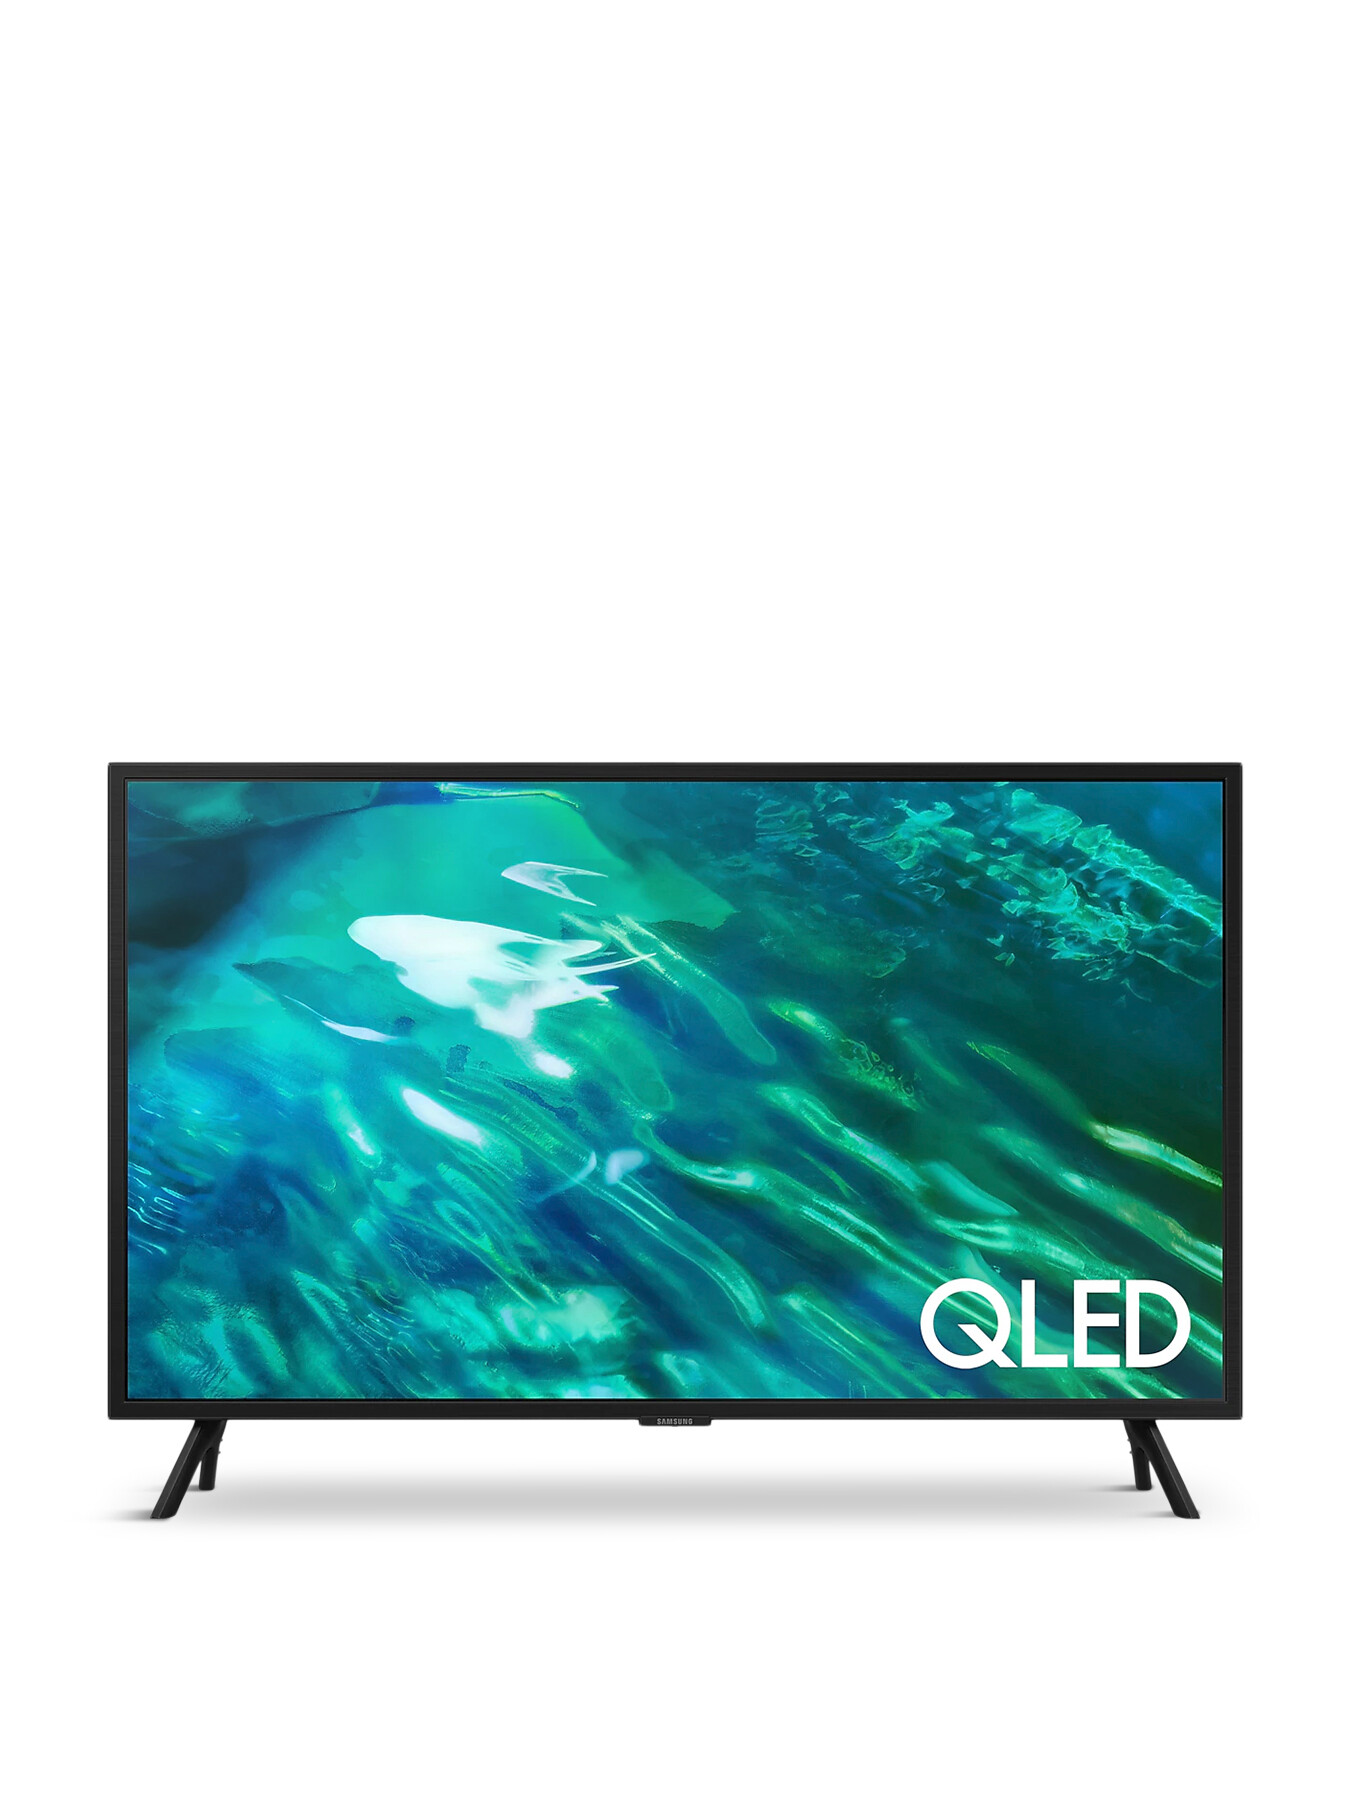 Samsung QE32Q50 QLED HDR 4k Smart TV 32 Inch | Fenwick